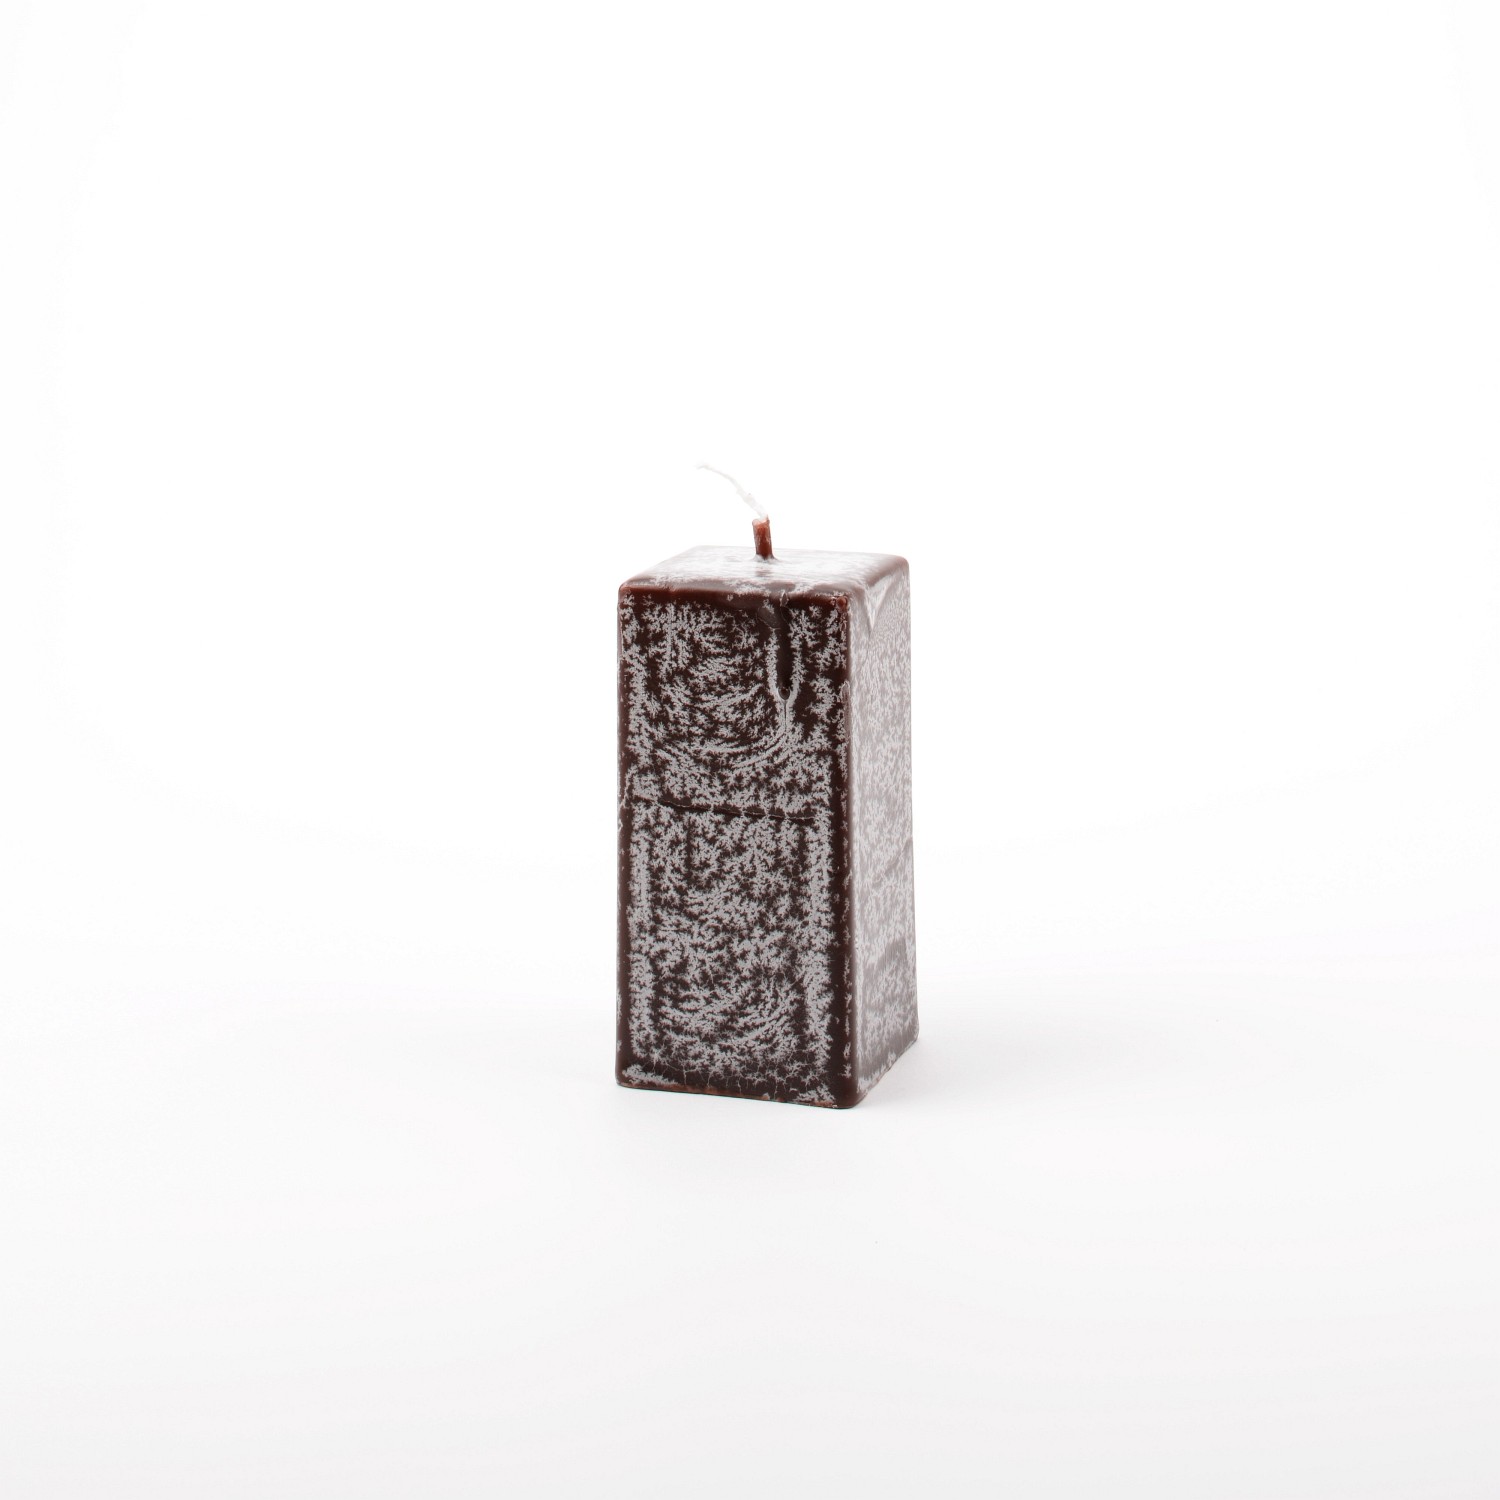 Viereck-Kerze "Frost" (Höhe 9,5 cm)